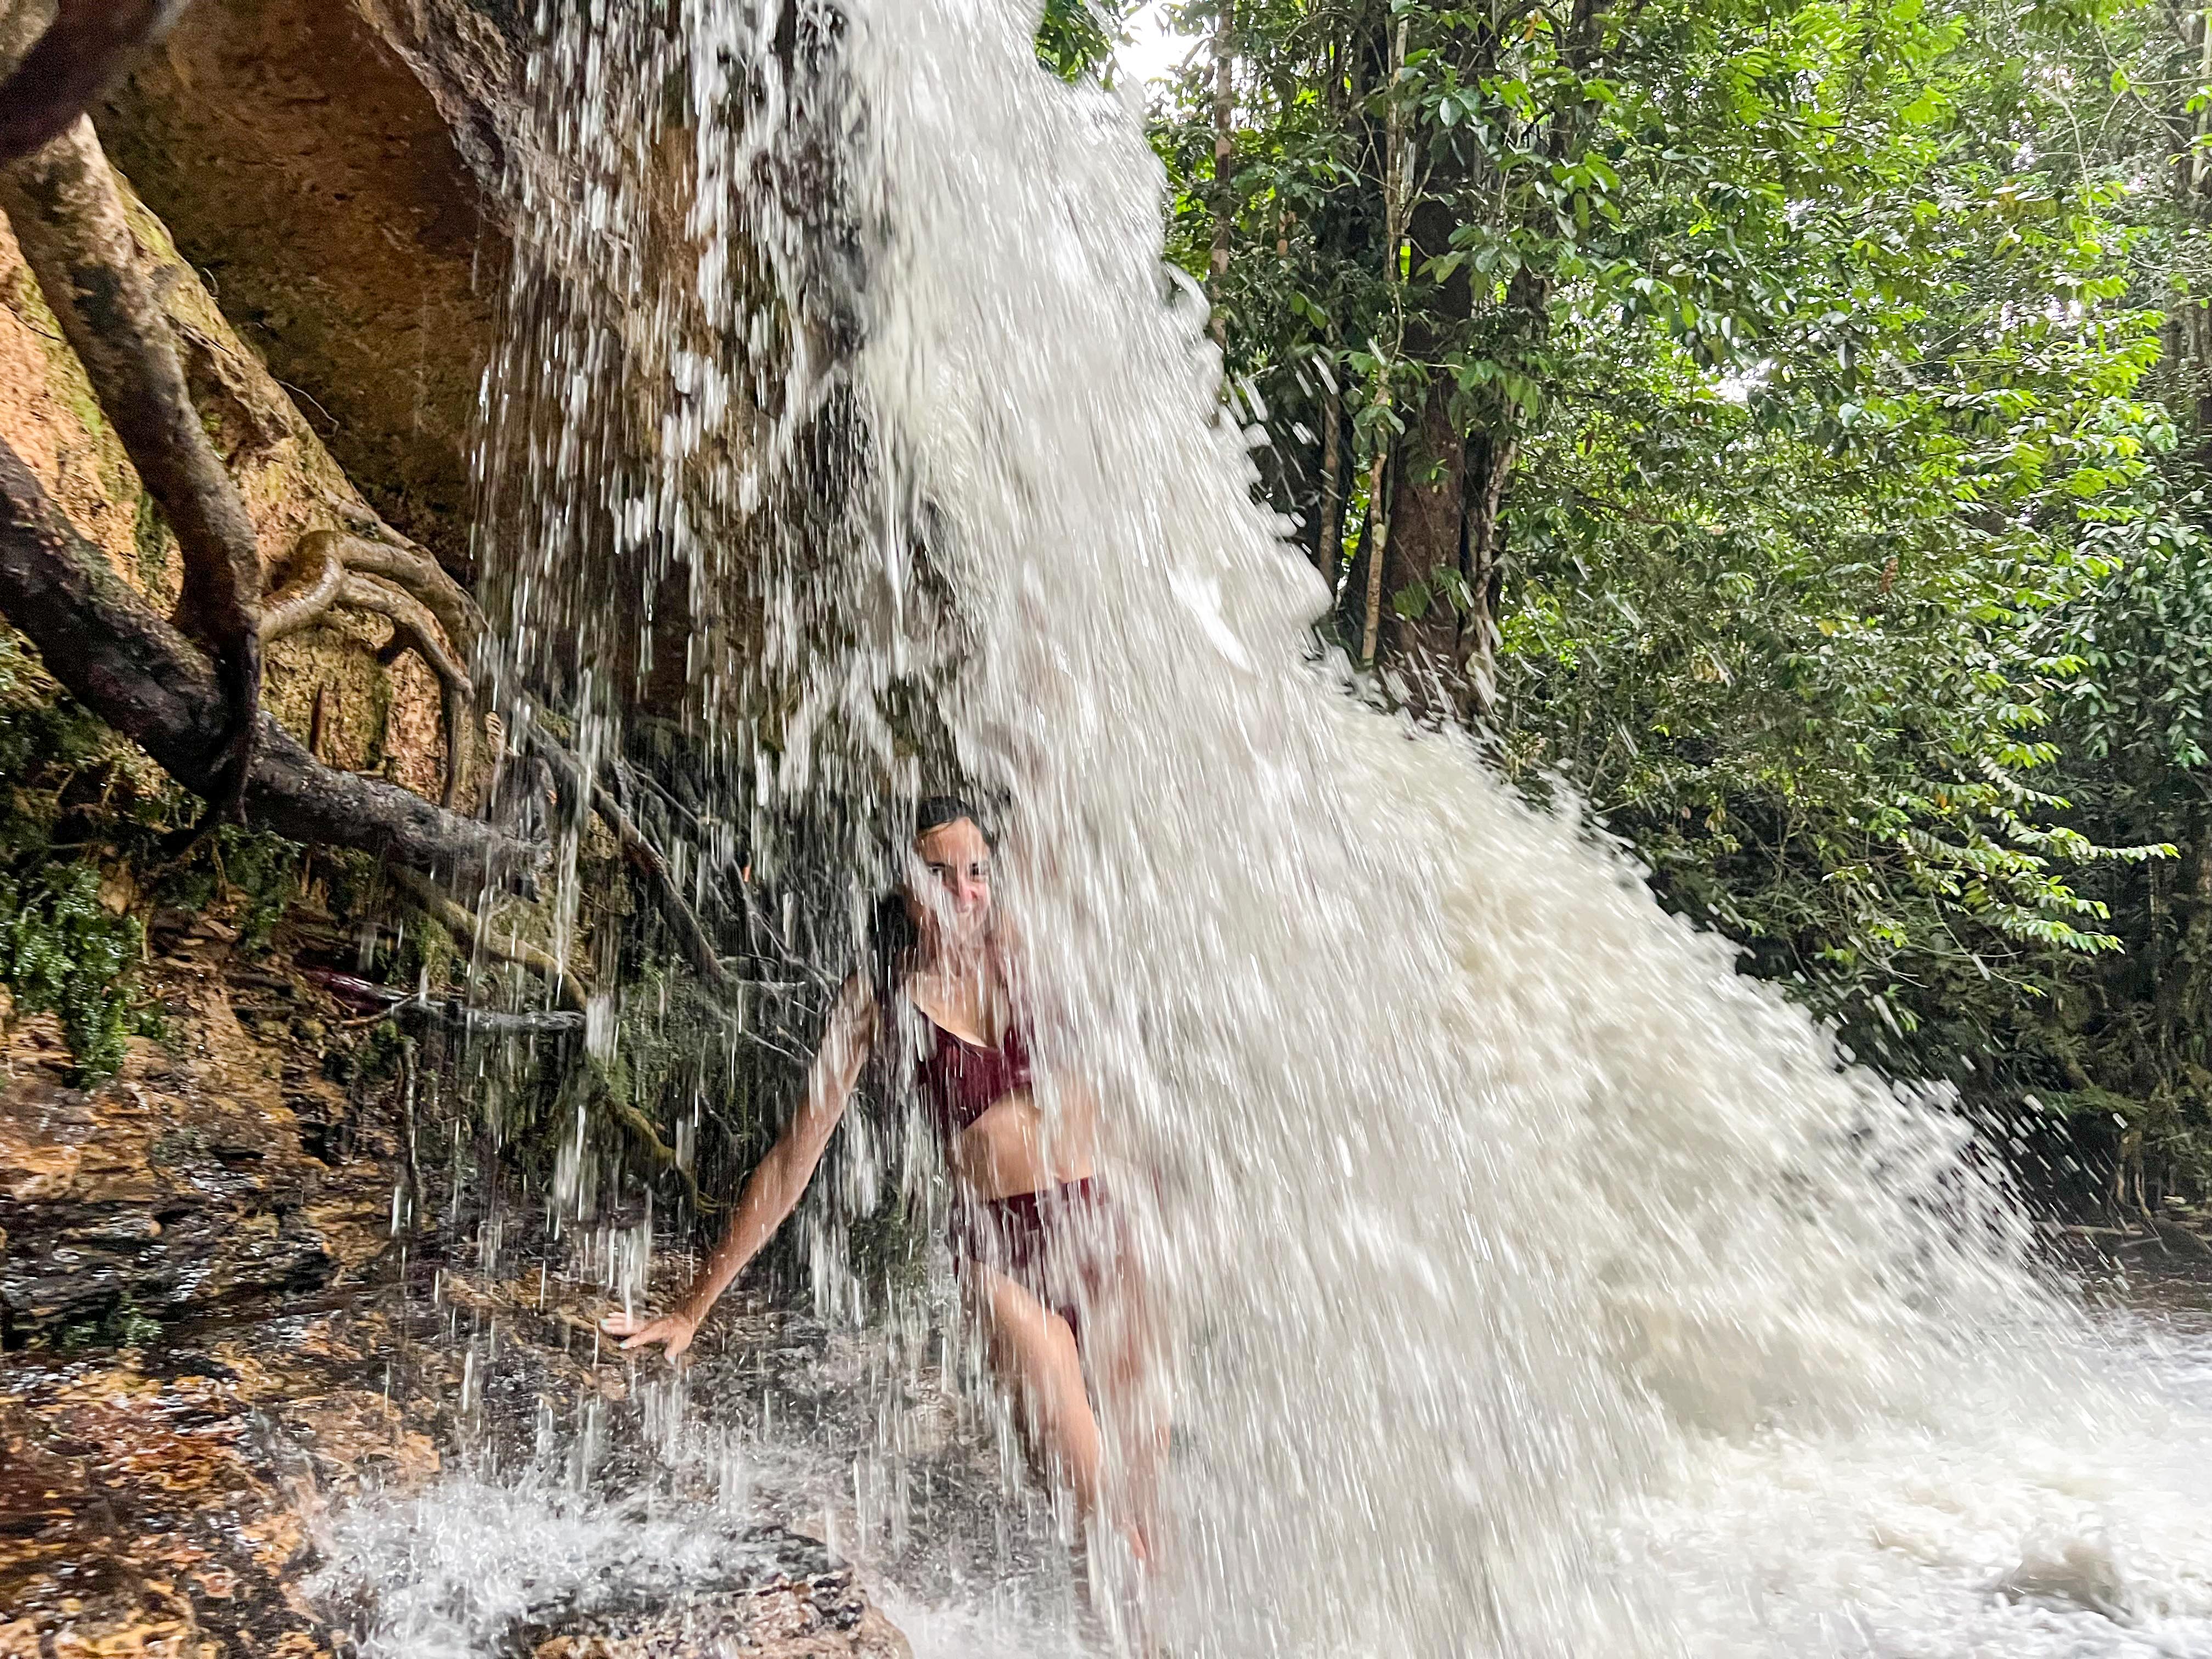 PRESIDENTE FIGUEIREDO: Cachoeira Asframa